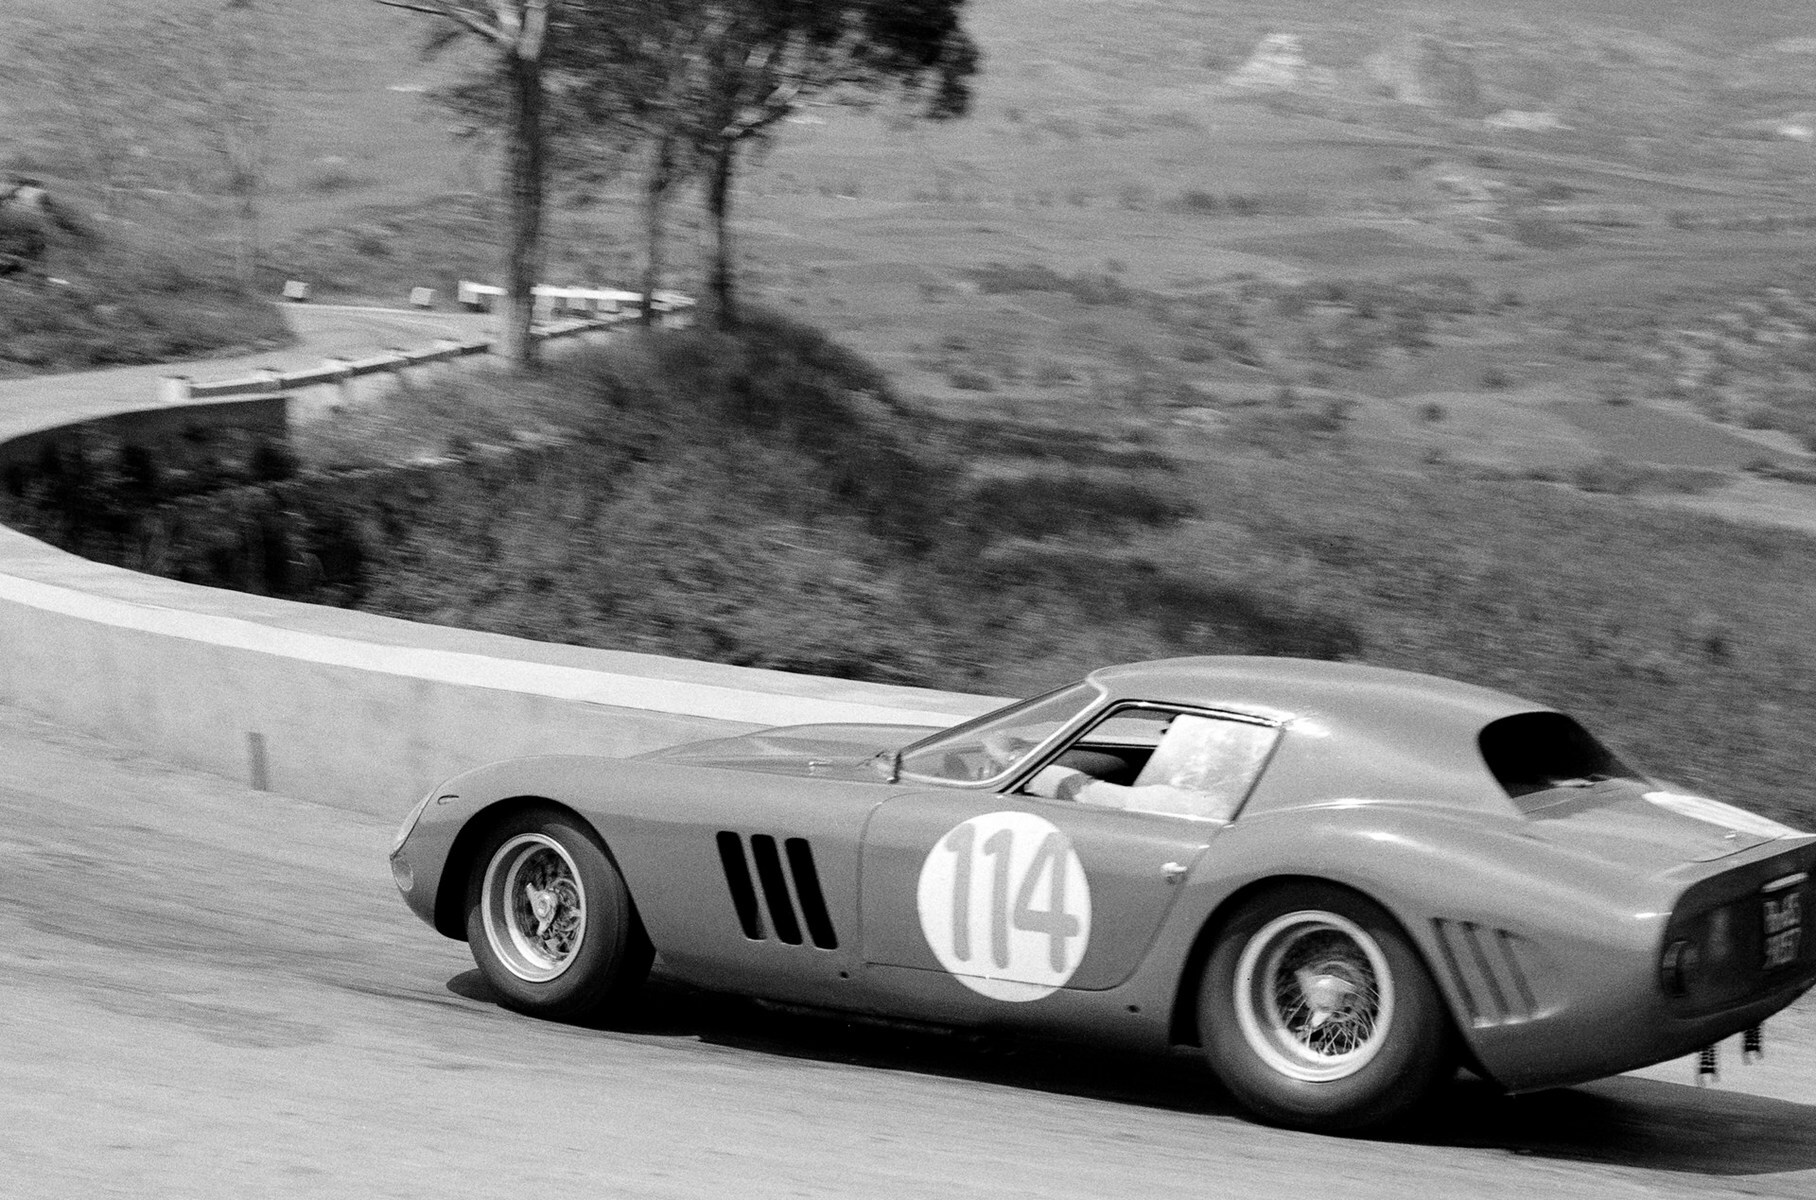 Третий владелец этой машины Коррадо Ферлаино в начале 1964 года «переодел» её в кузов второй серии ателье Scaglietti. Снимок сделан на дорожной гонке Targa Florio 1964 года (1 место в классе, 5 место в абсолютном зачёте)